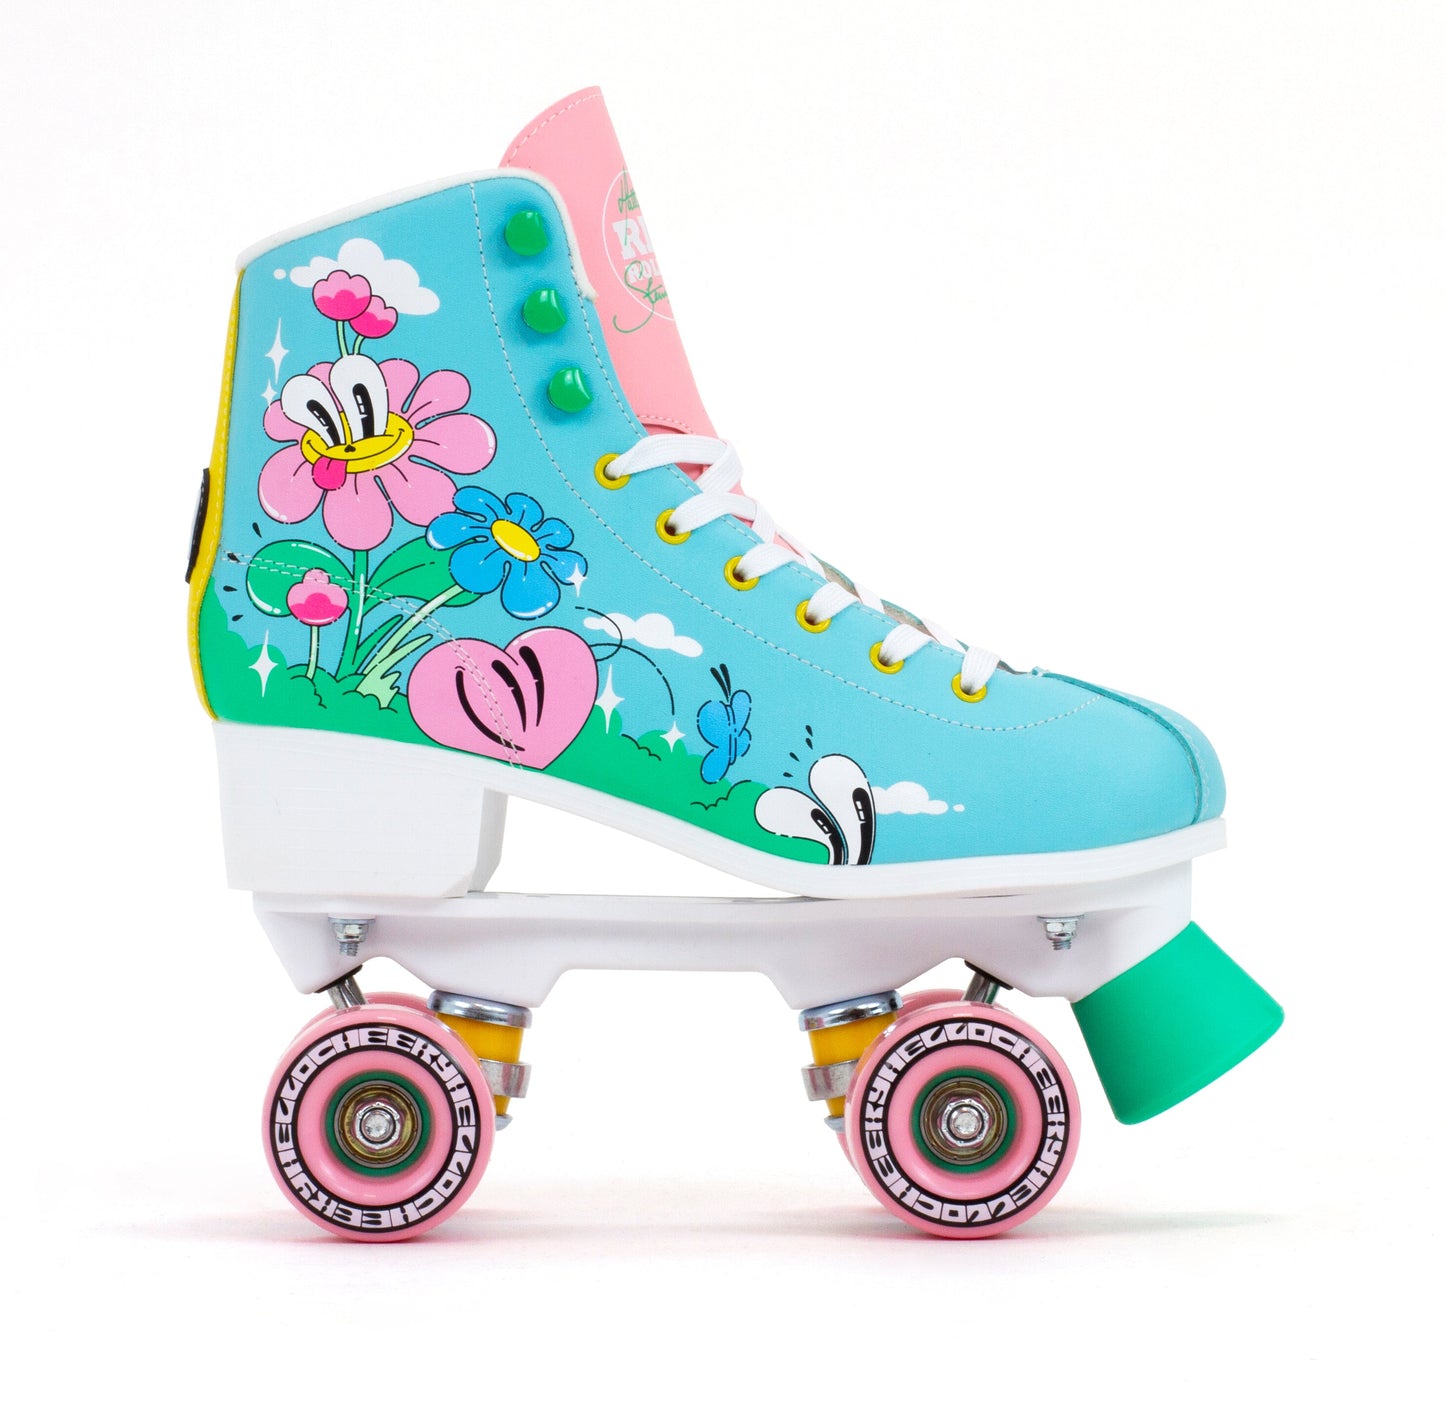 Rio Roller Hattie Stewart Collab Roller Skates